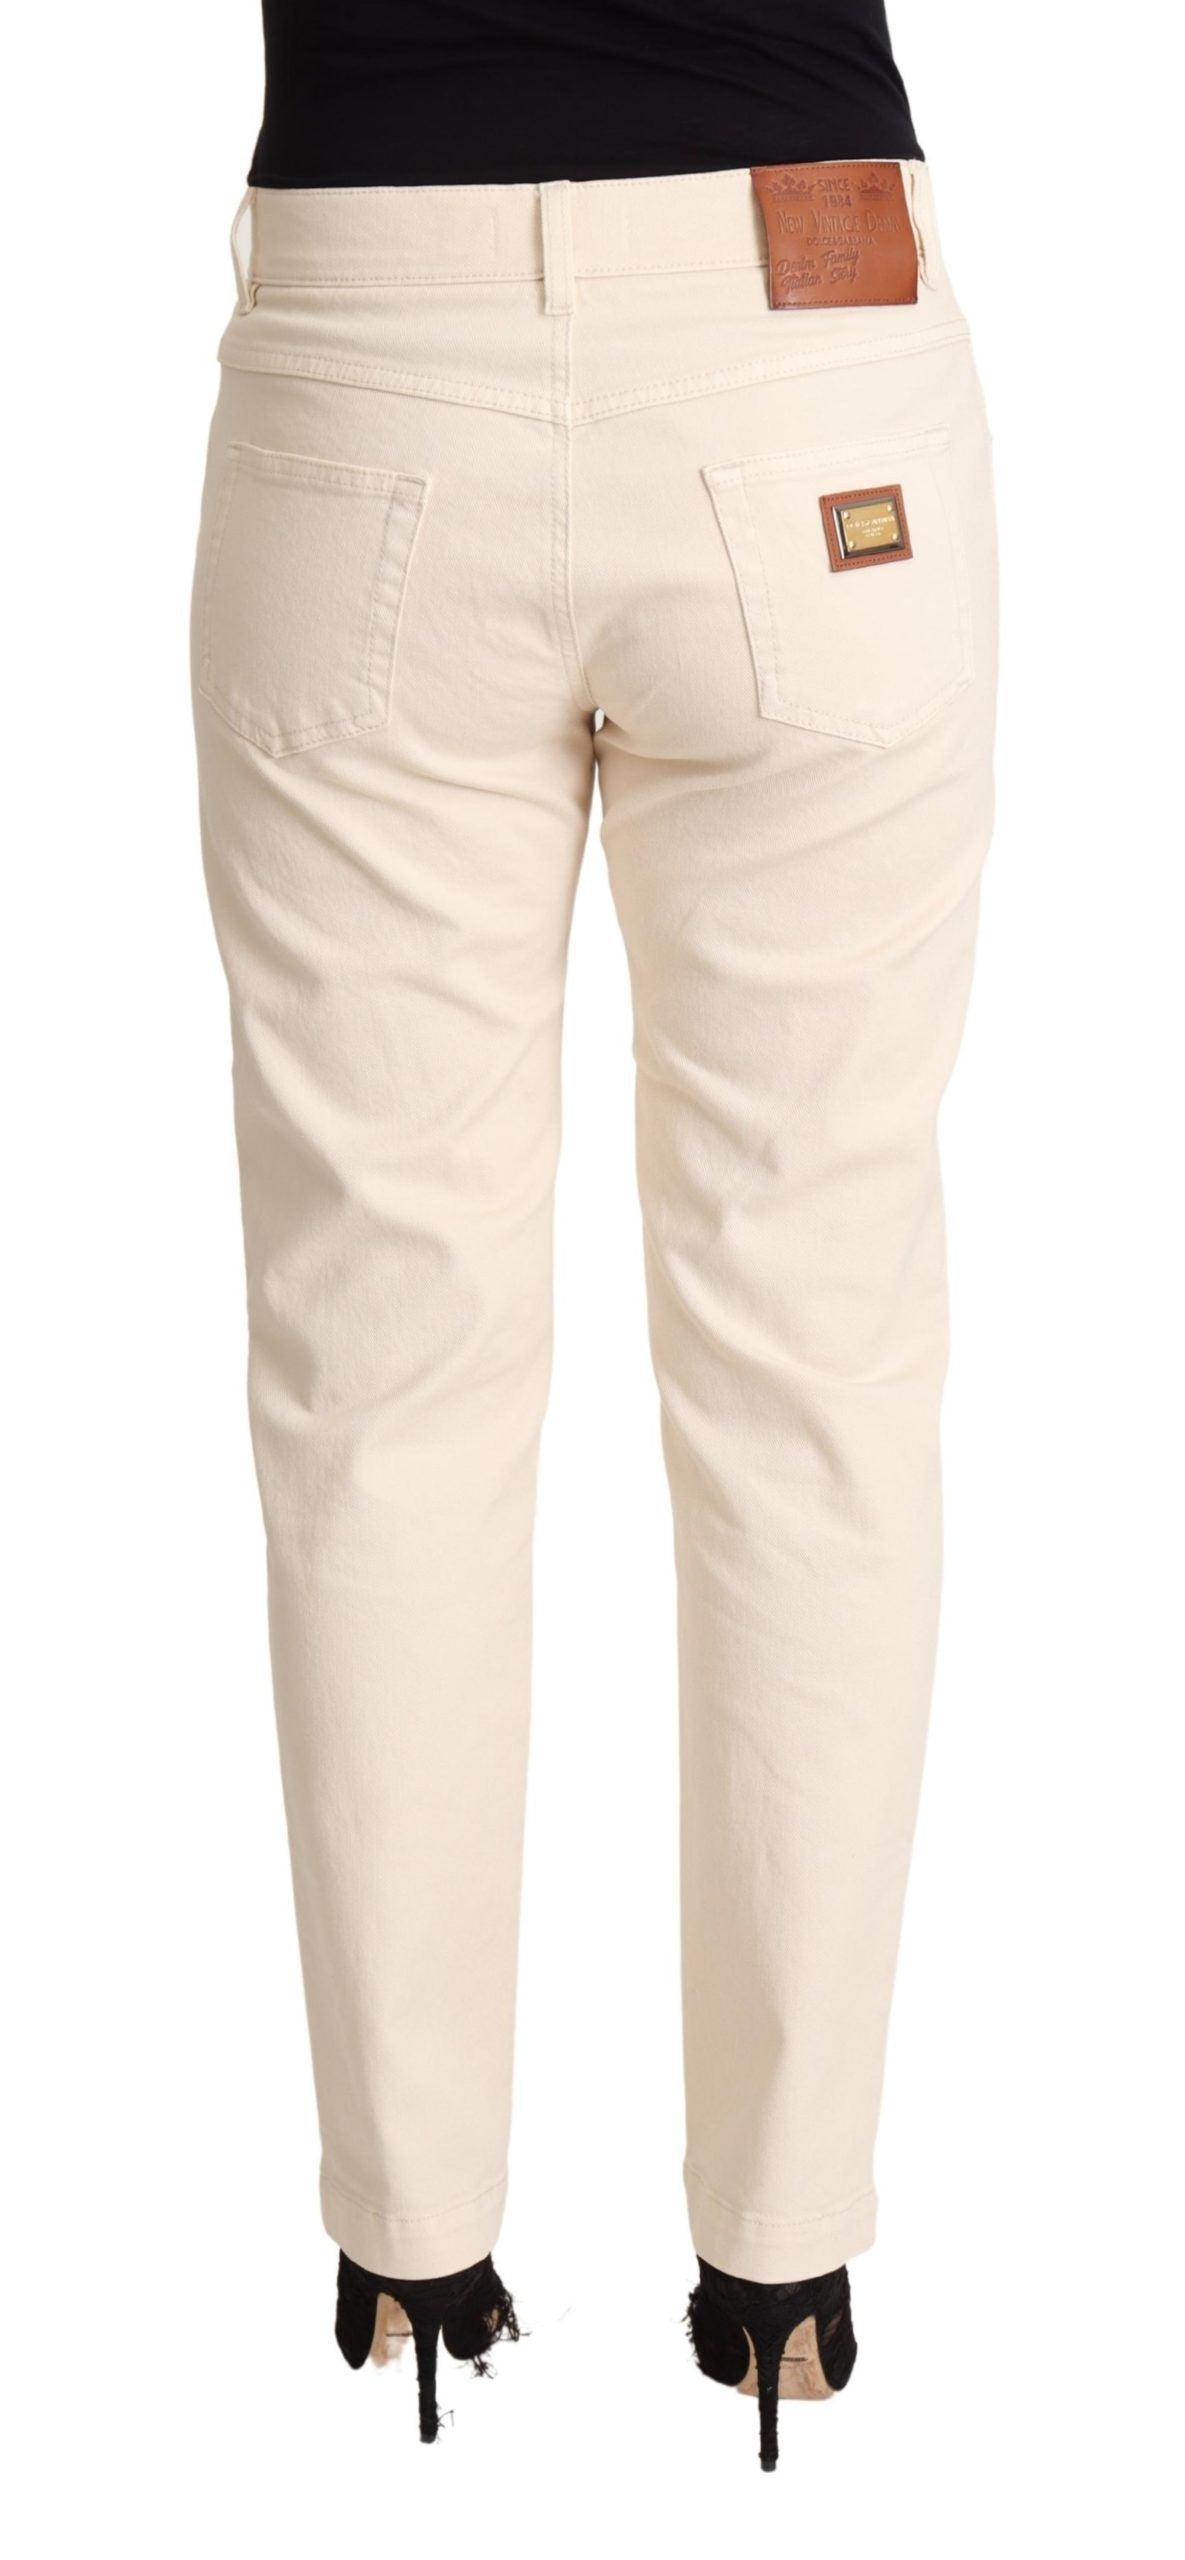 White Cotton Skinny Denim Women Jeans Pants